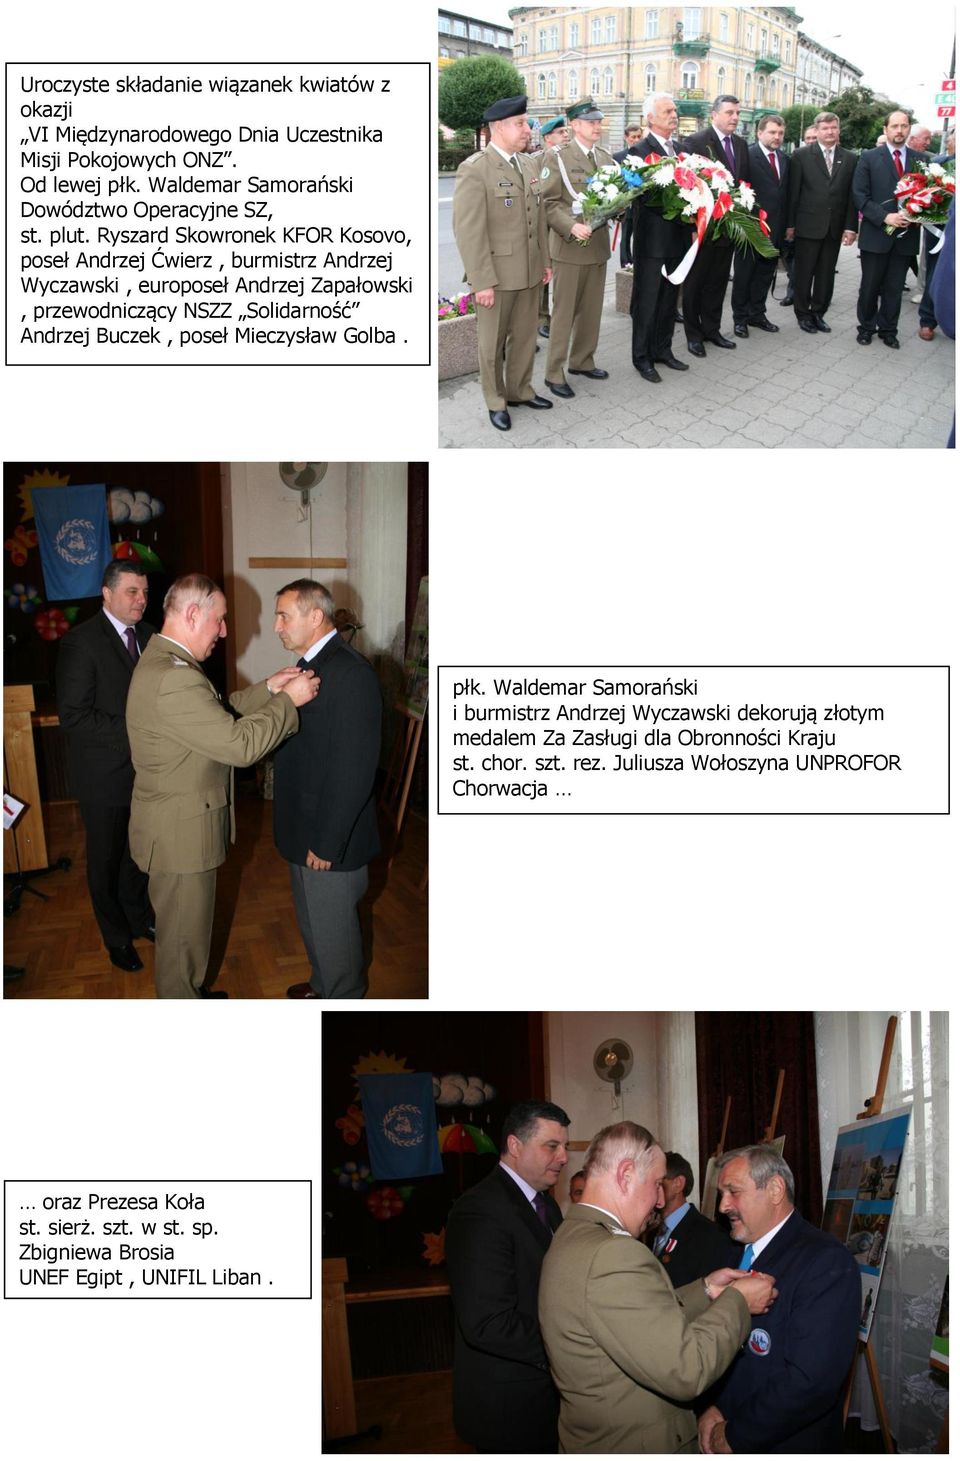 Ryszard Skowronek KFOR Kosovo, poseł Andrzej Ćwierz, burmistrz Andrzej Wyczawski, europoseł Andrzej Zapałowski, przewodniczący NSZZ Solidarność Andrzej